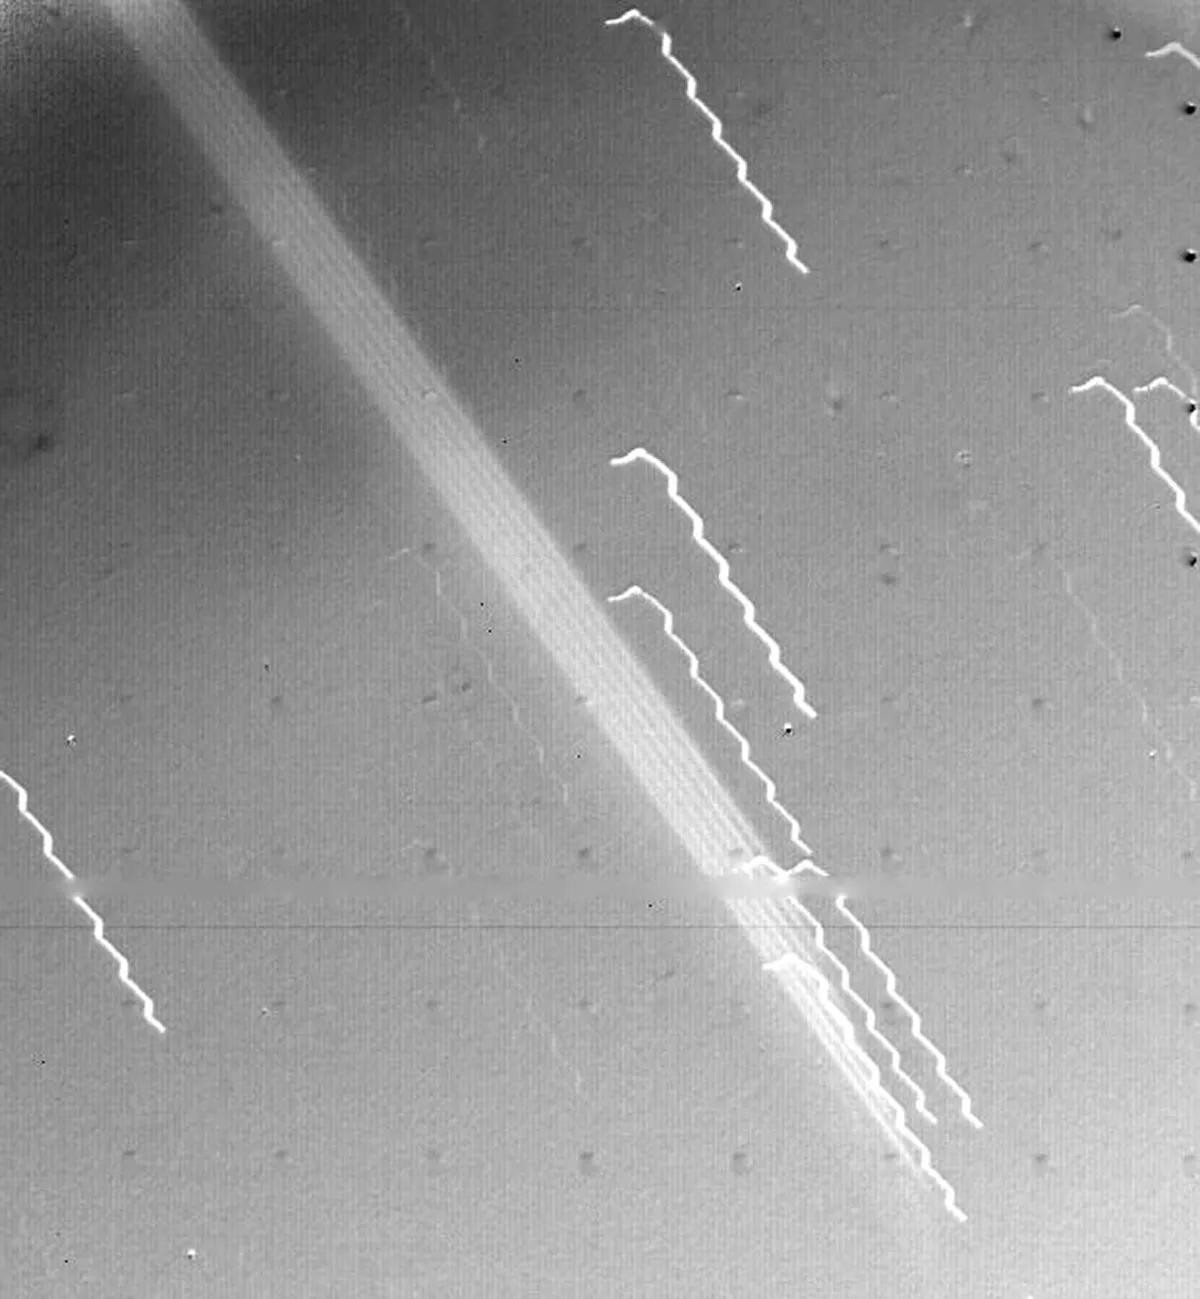 La amplia banda brillante que cruza diagonalmente el centro de esta imagen es la primera evidencia de los anillos de Júpiter, vista por la nave espacial Voyager 1 el 4 de marzo de 1979. El borde del anillo estaba a 1.212.000 km de la nave espacial y a 57.000 km de la nube visible. .  Puente de Júpiter.  Las líneas oscilantes son estrellas de fondo, cuyo aspecto se ve afectado por el movimiento de la nave espacial.  Crédito: NASA/JPL